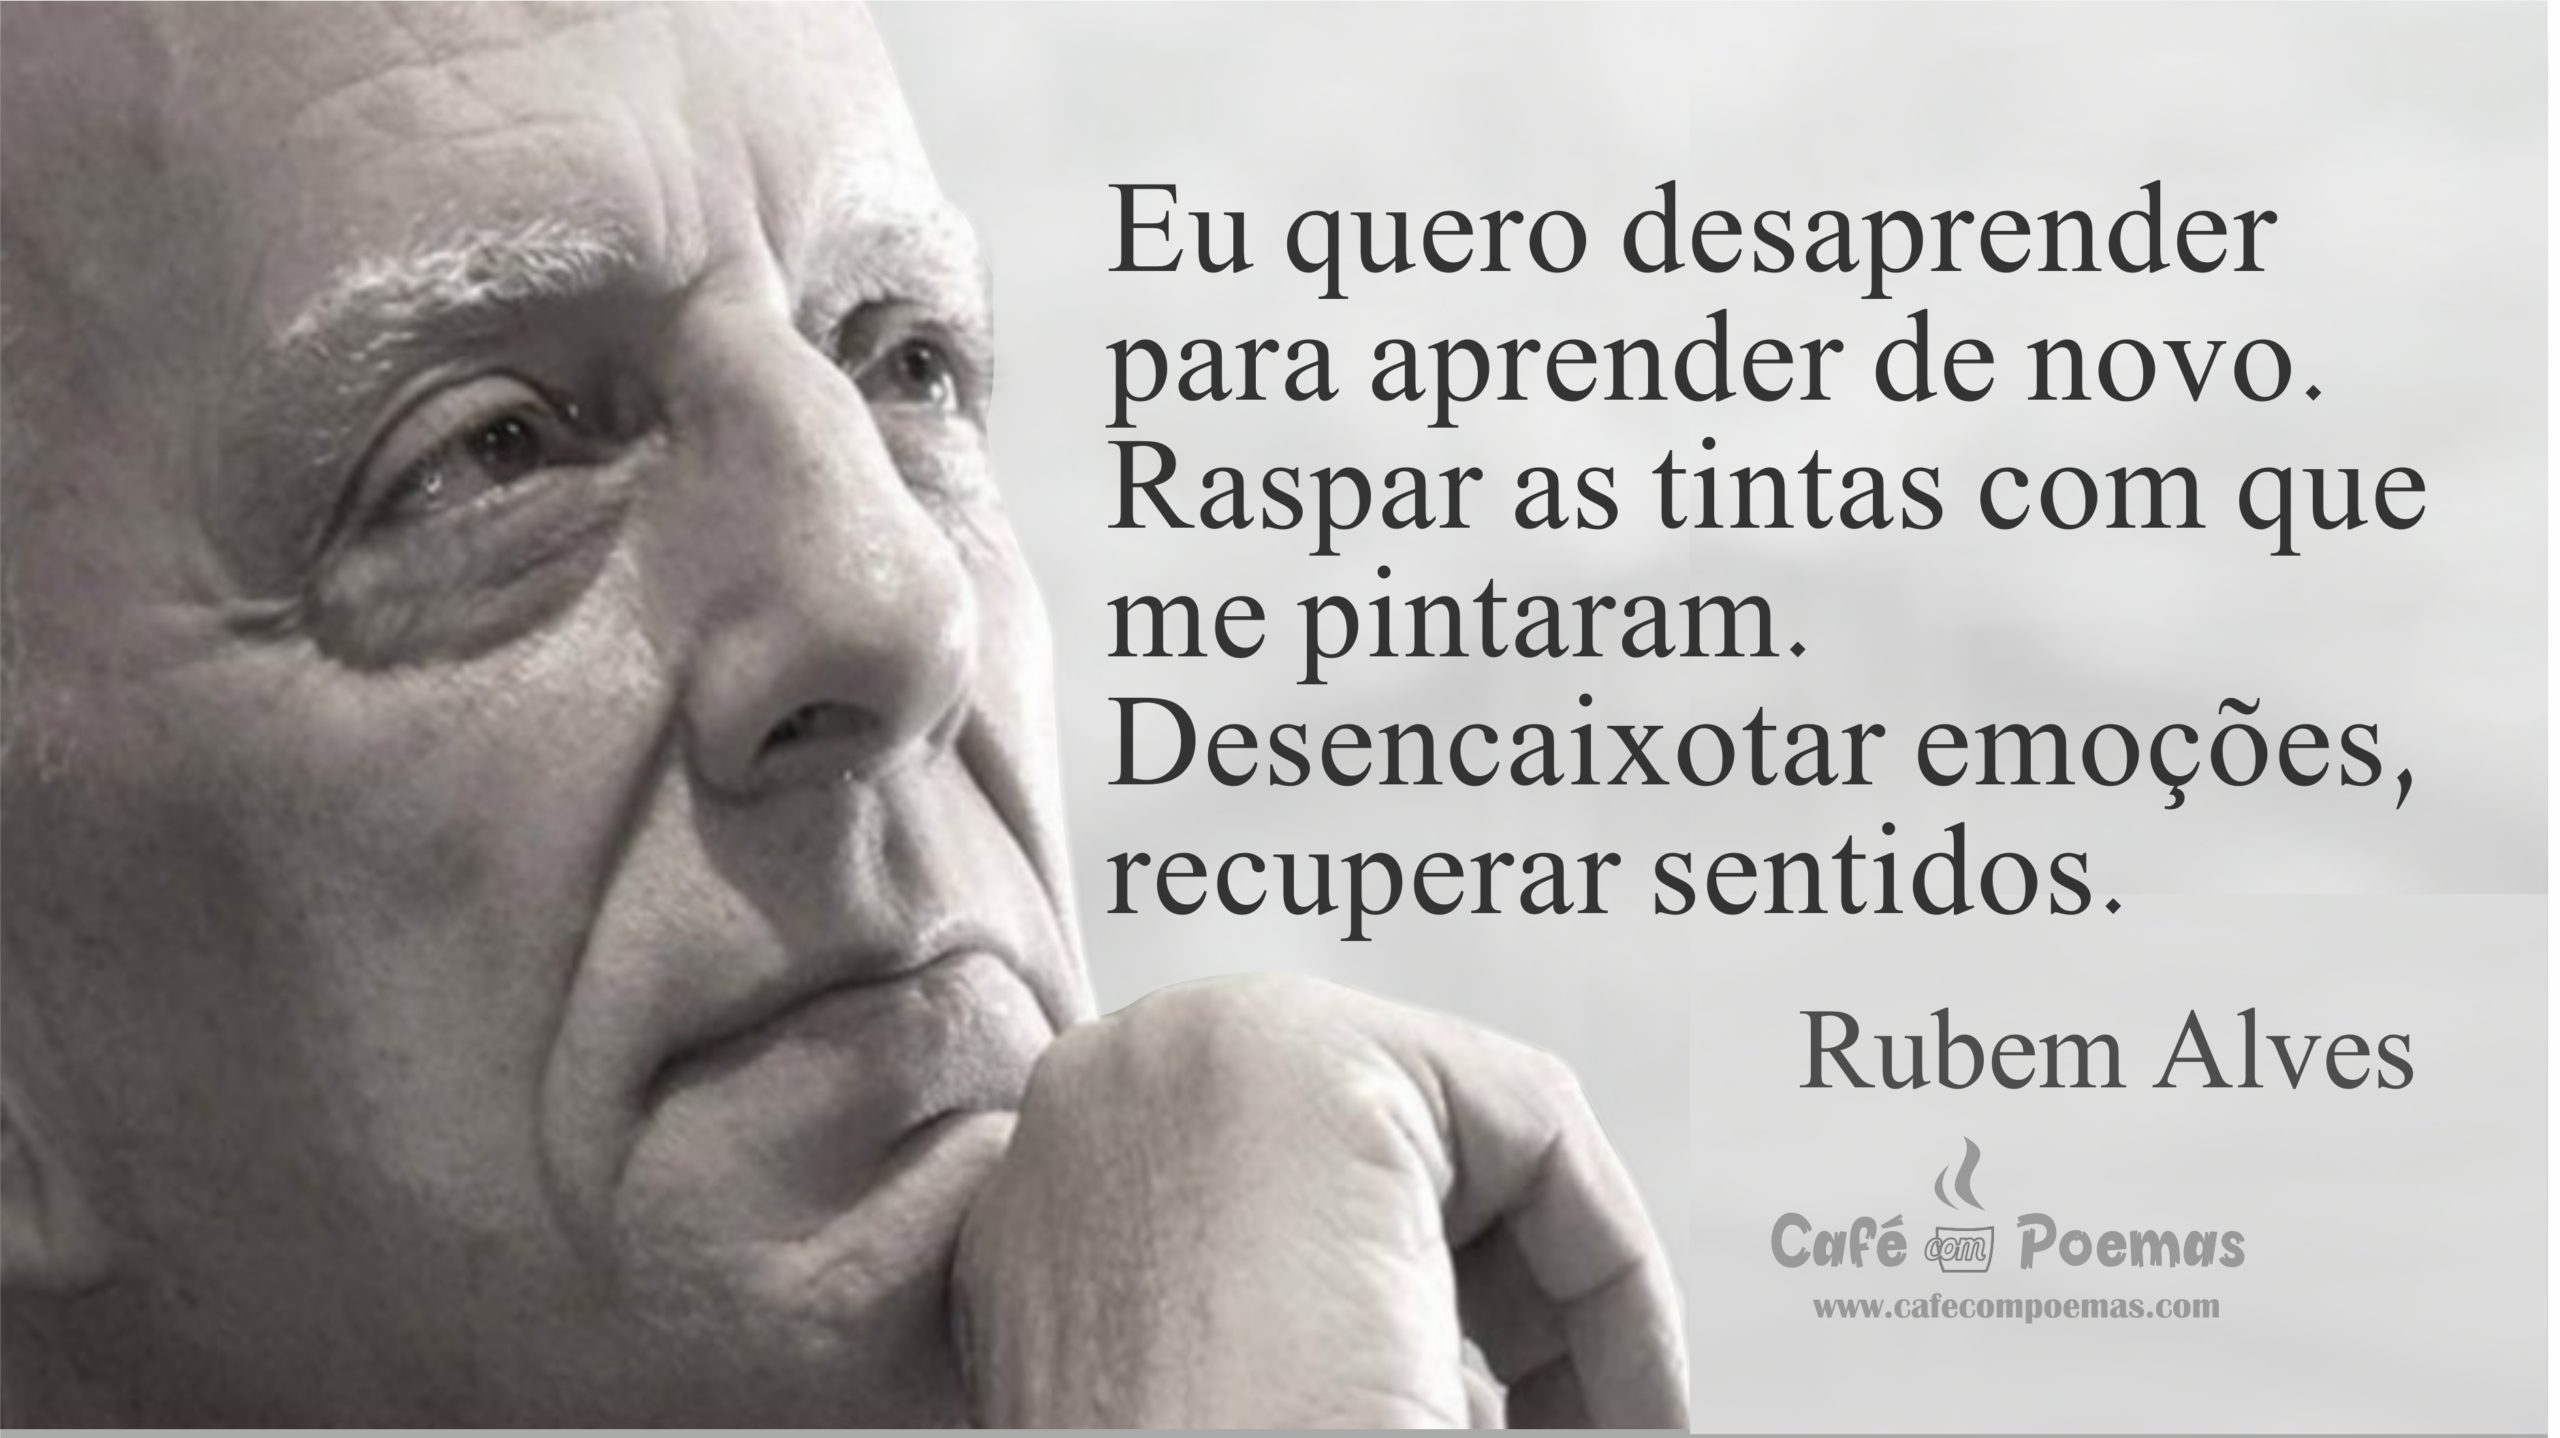 Rubens Alves café com poemas